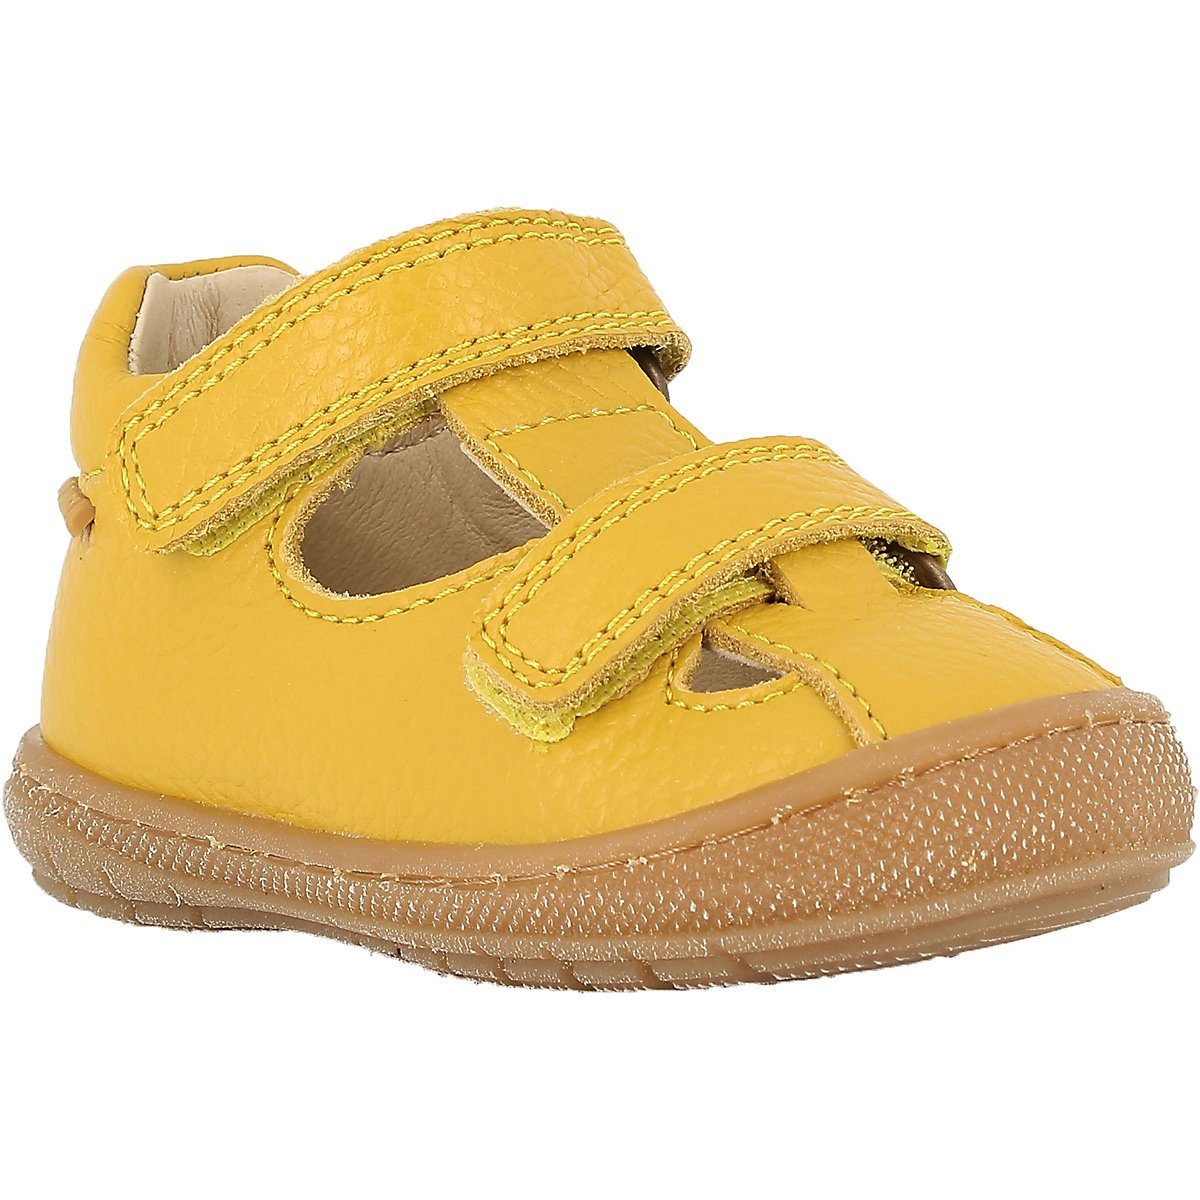 Schuhe Babyschuhe Jungen Primigi Sandalen für Mädchen Sandale